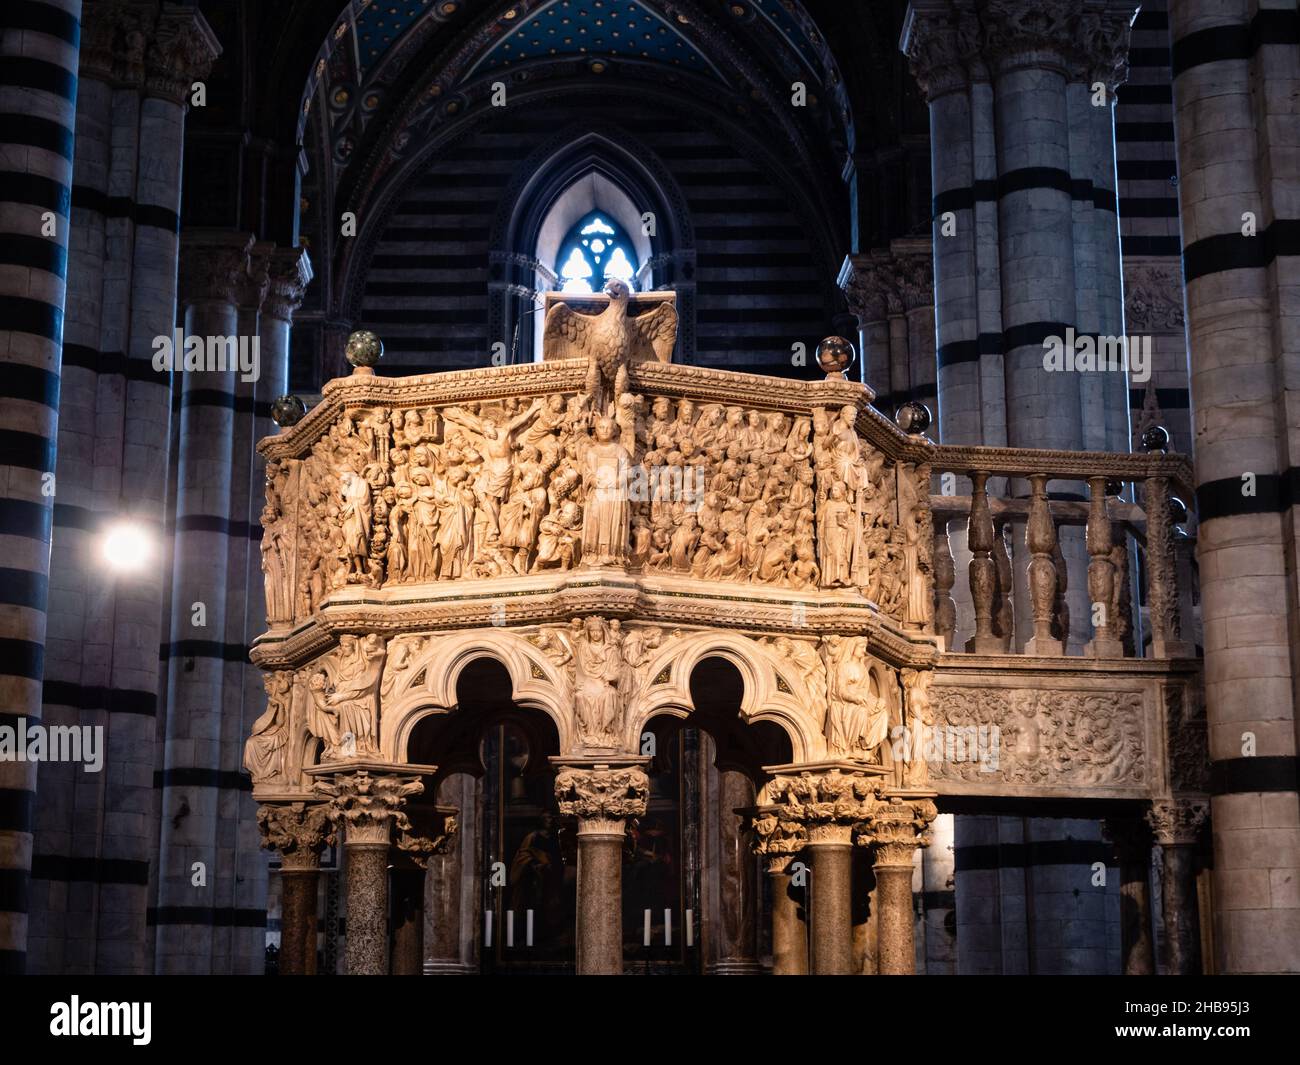 Siena, Italia - Agosto 15 2021: Púlpito en la Catedral de Siena hecho de mármol Carrara en estilo gótico por Nicola Pisano Foto de stock